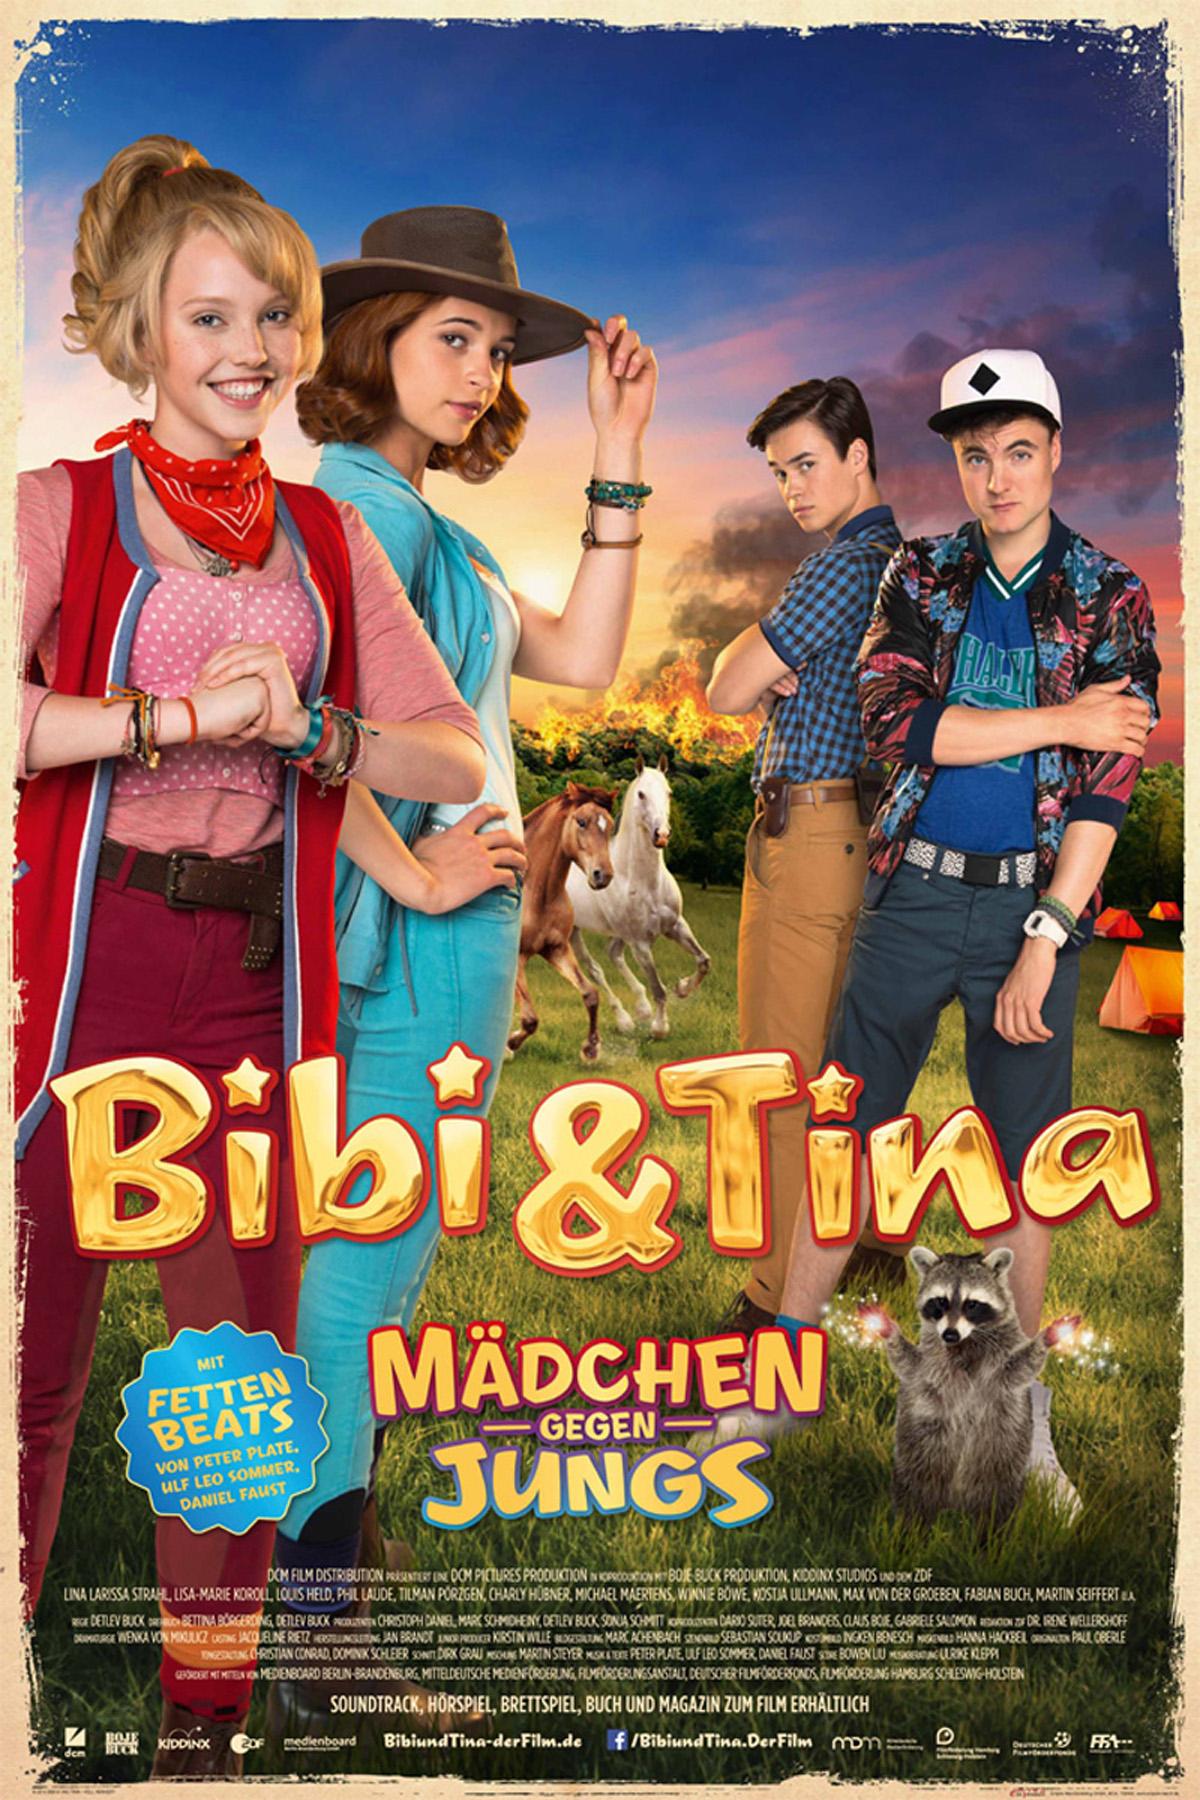 Bibi & gegen - Tina Mädchen Jungs